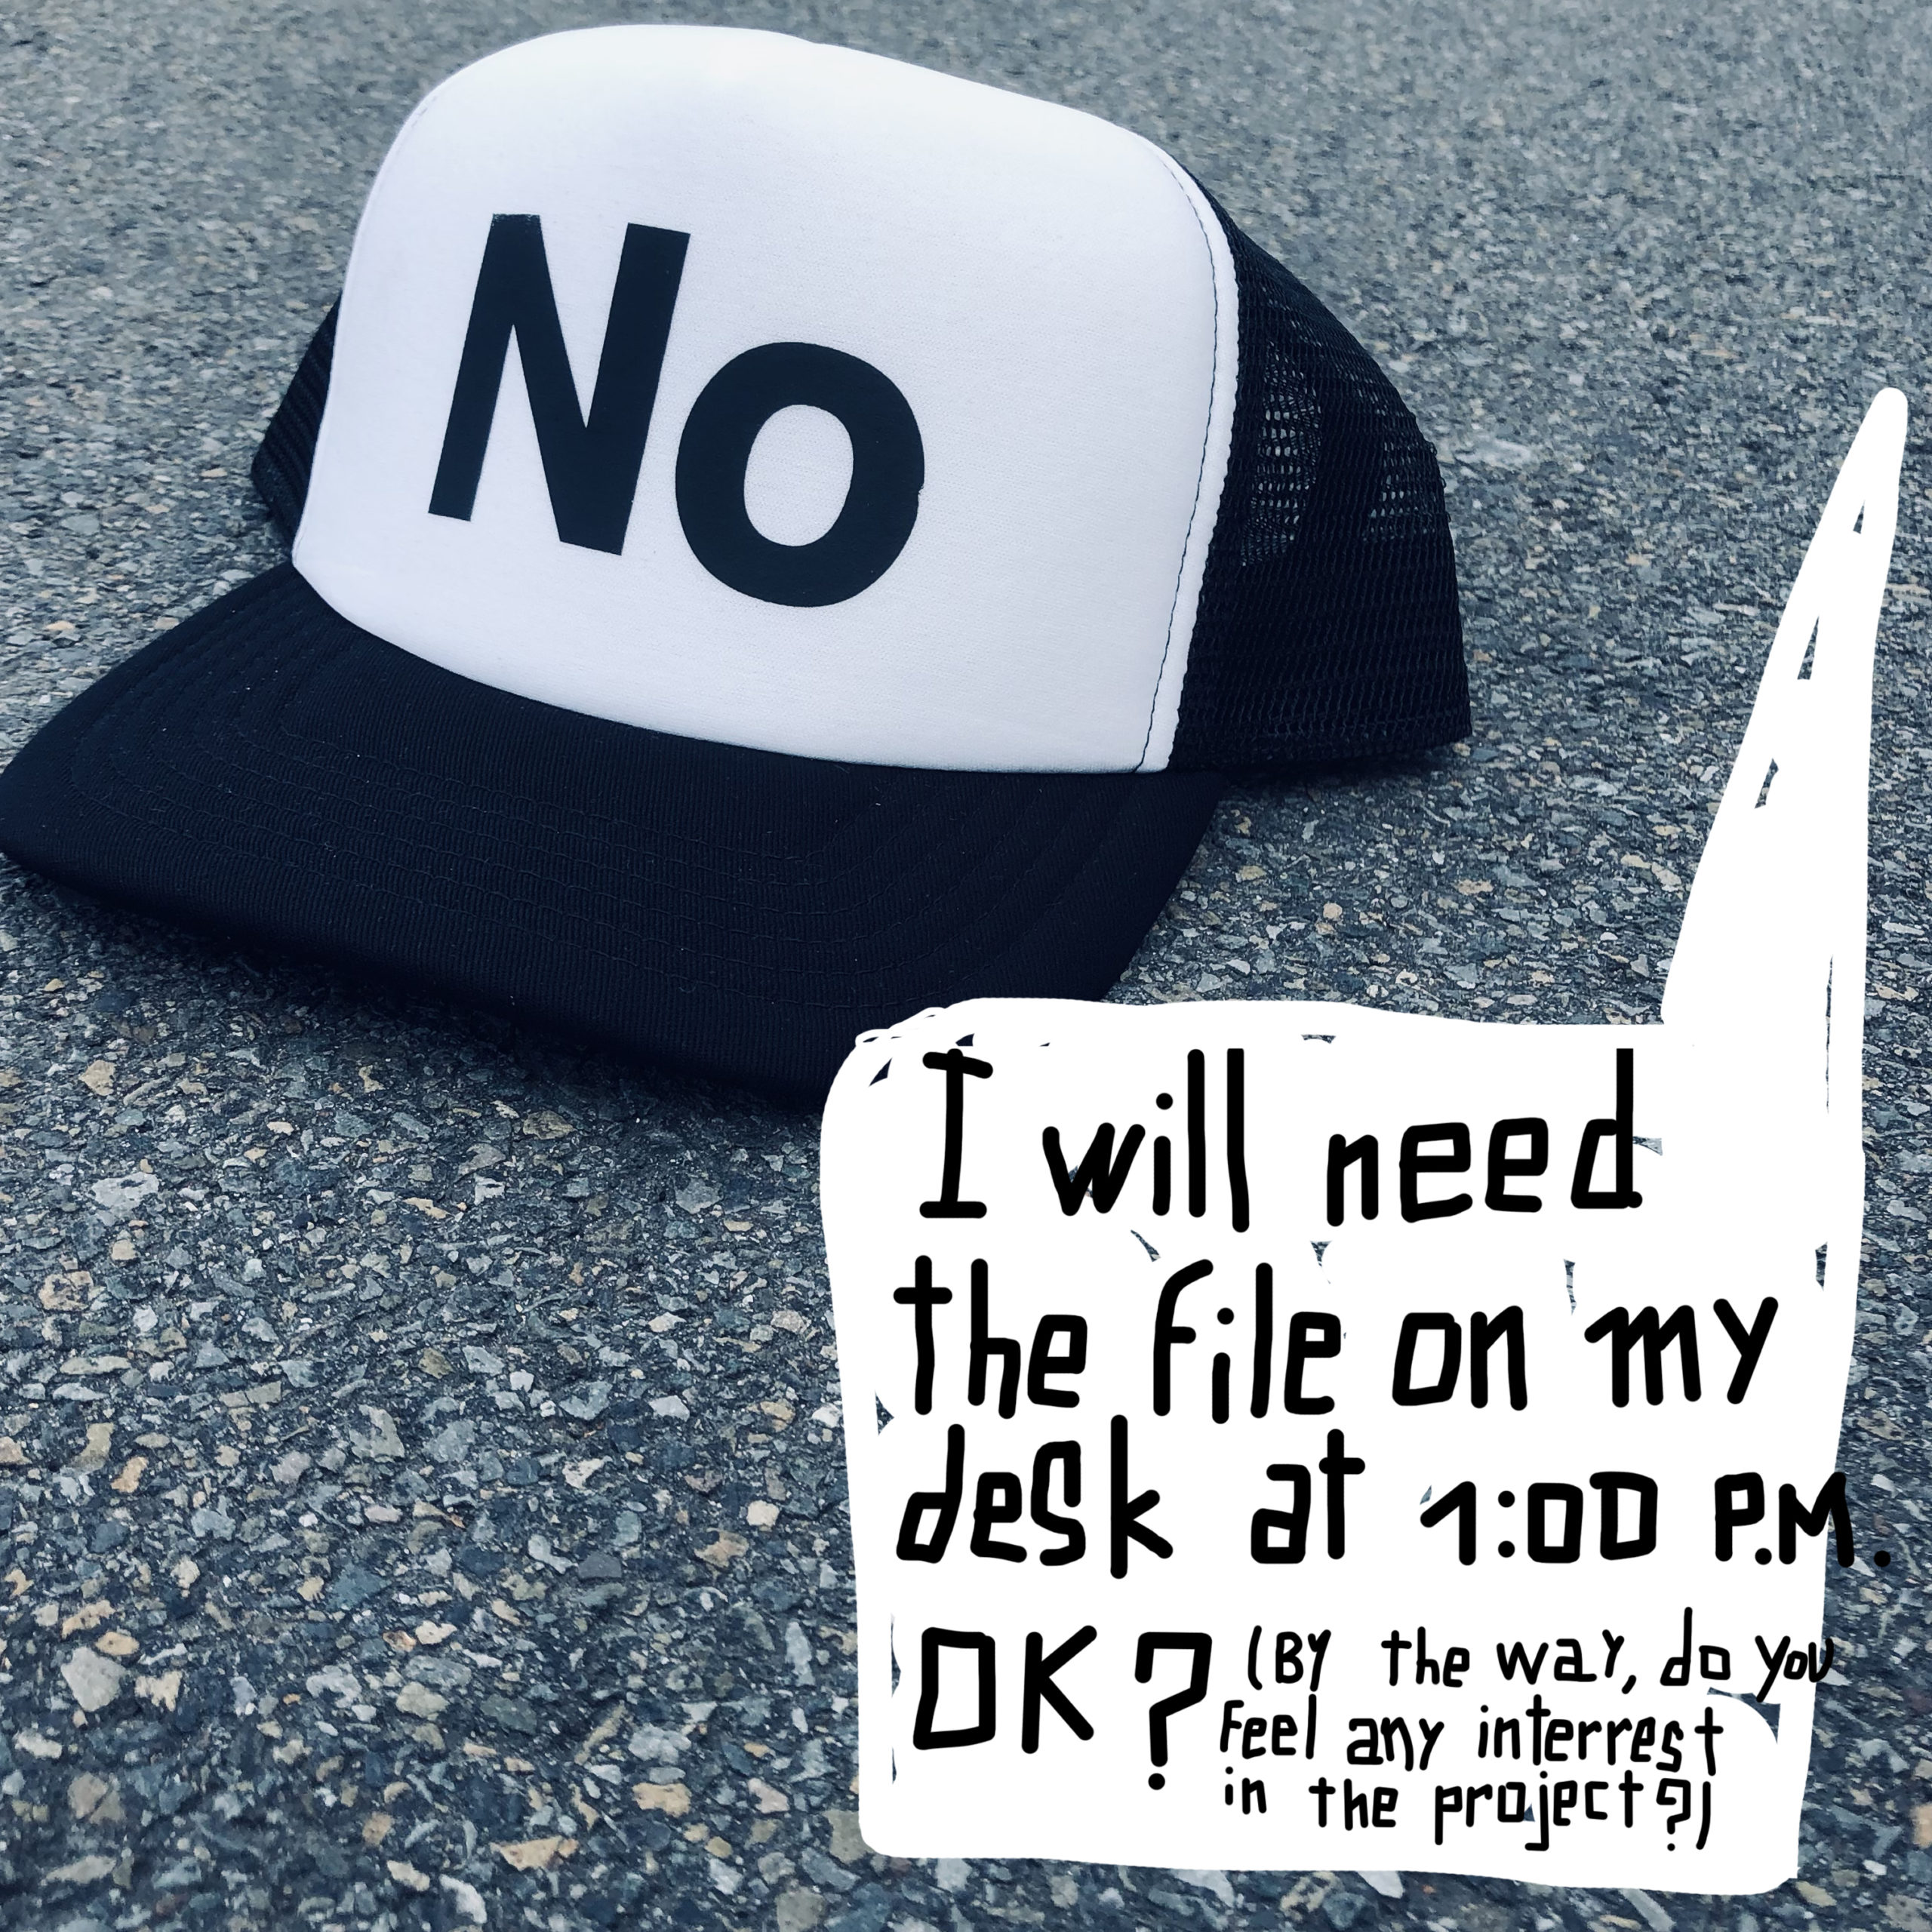 The "No cap"